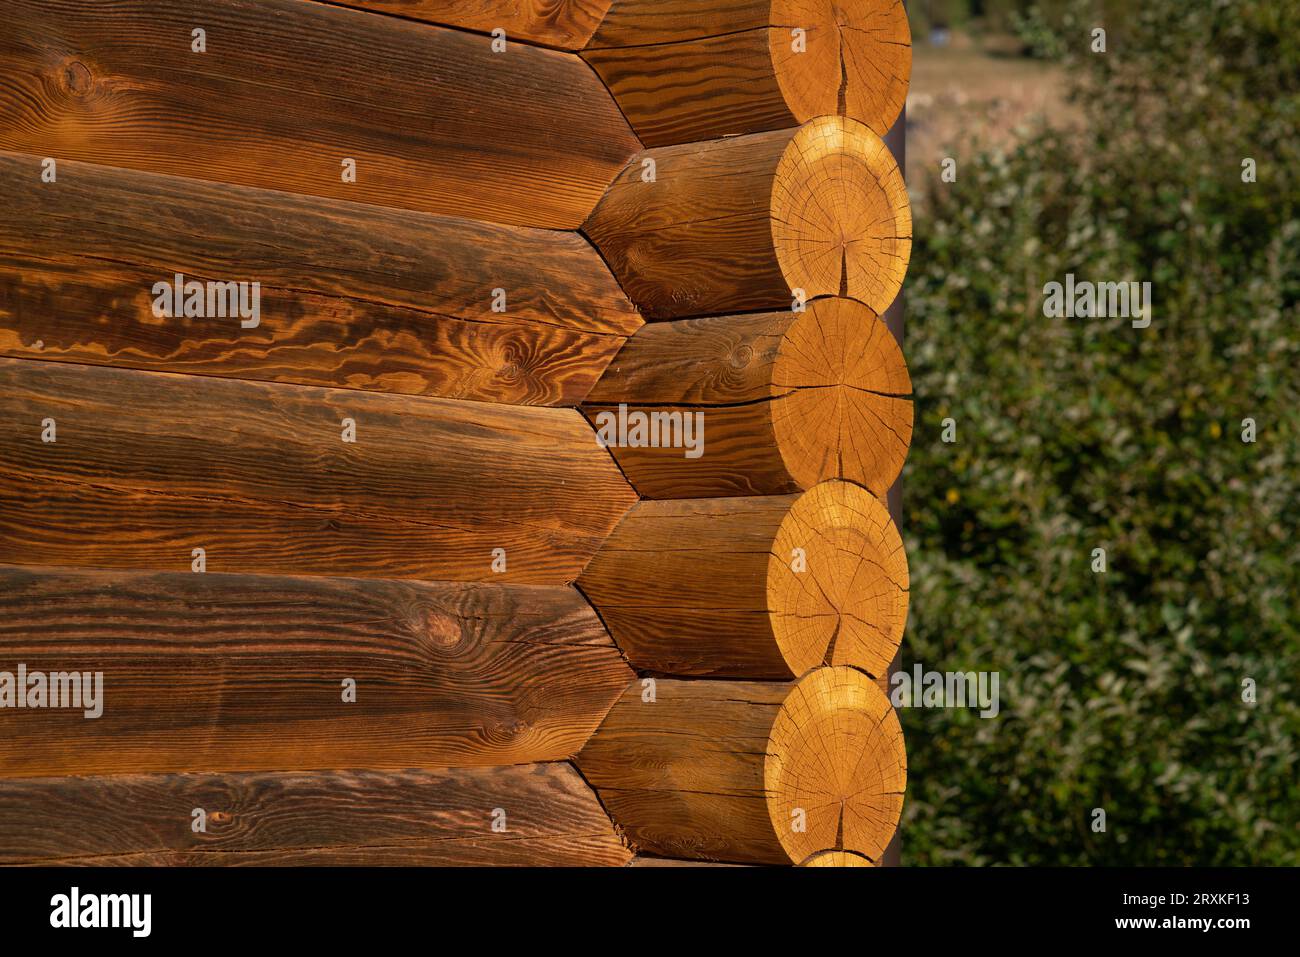 Holzgebäude mit Baudetails und Fassade mit freiliegenden Holzbalken. Ineinander greifende Balkenstruktur. Architektur, Design. Stockfoto